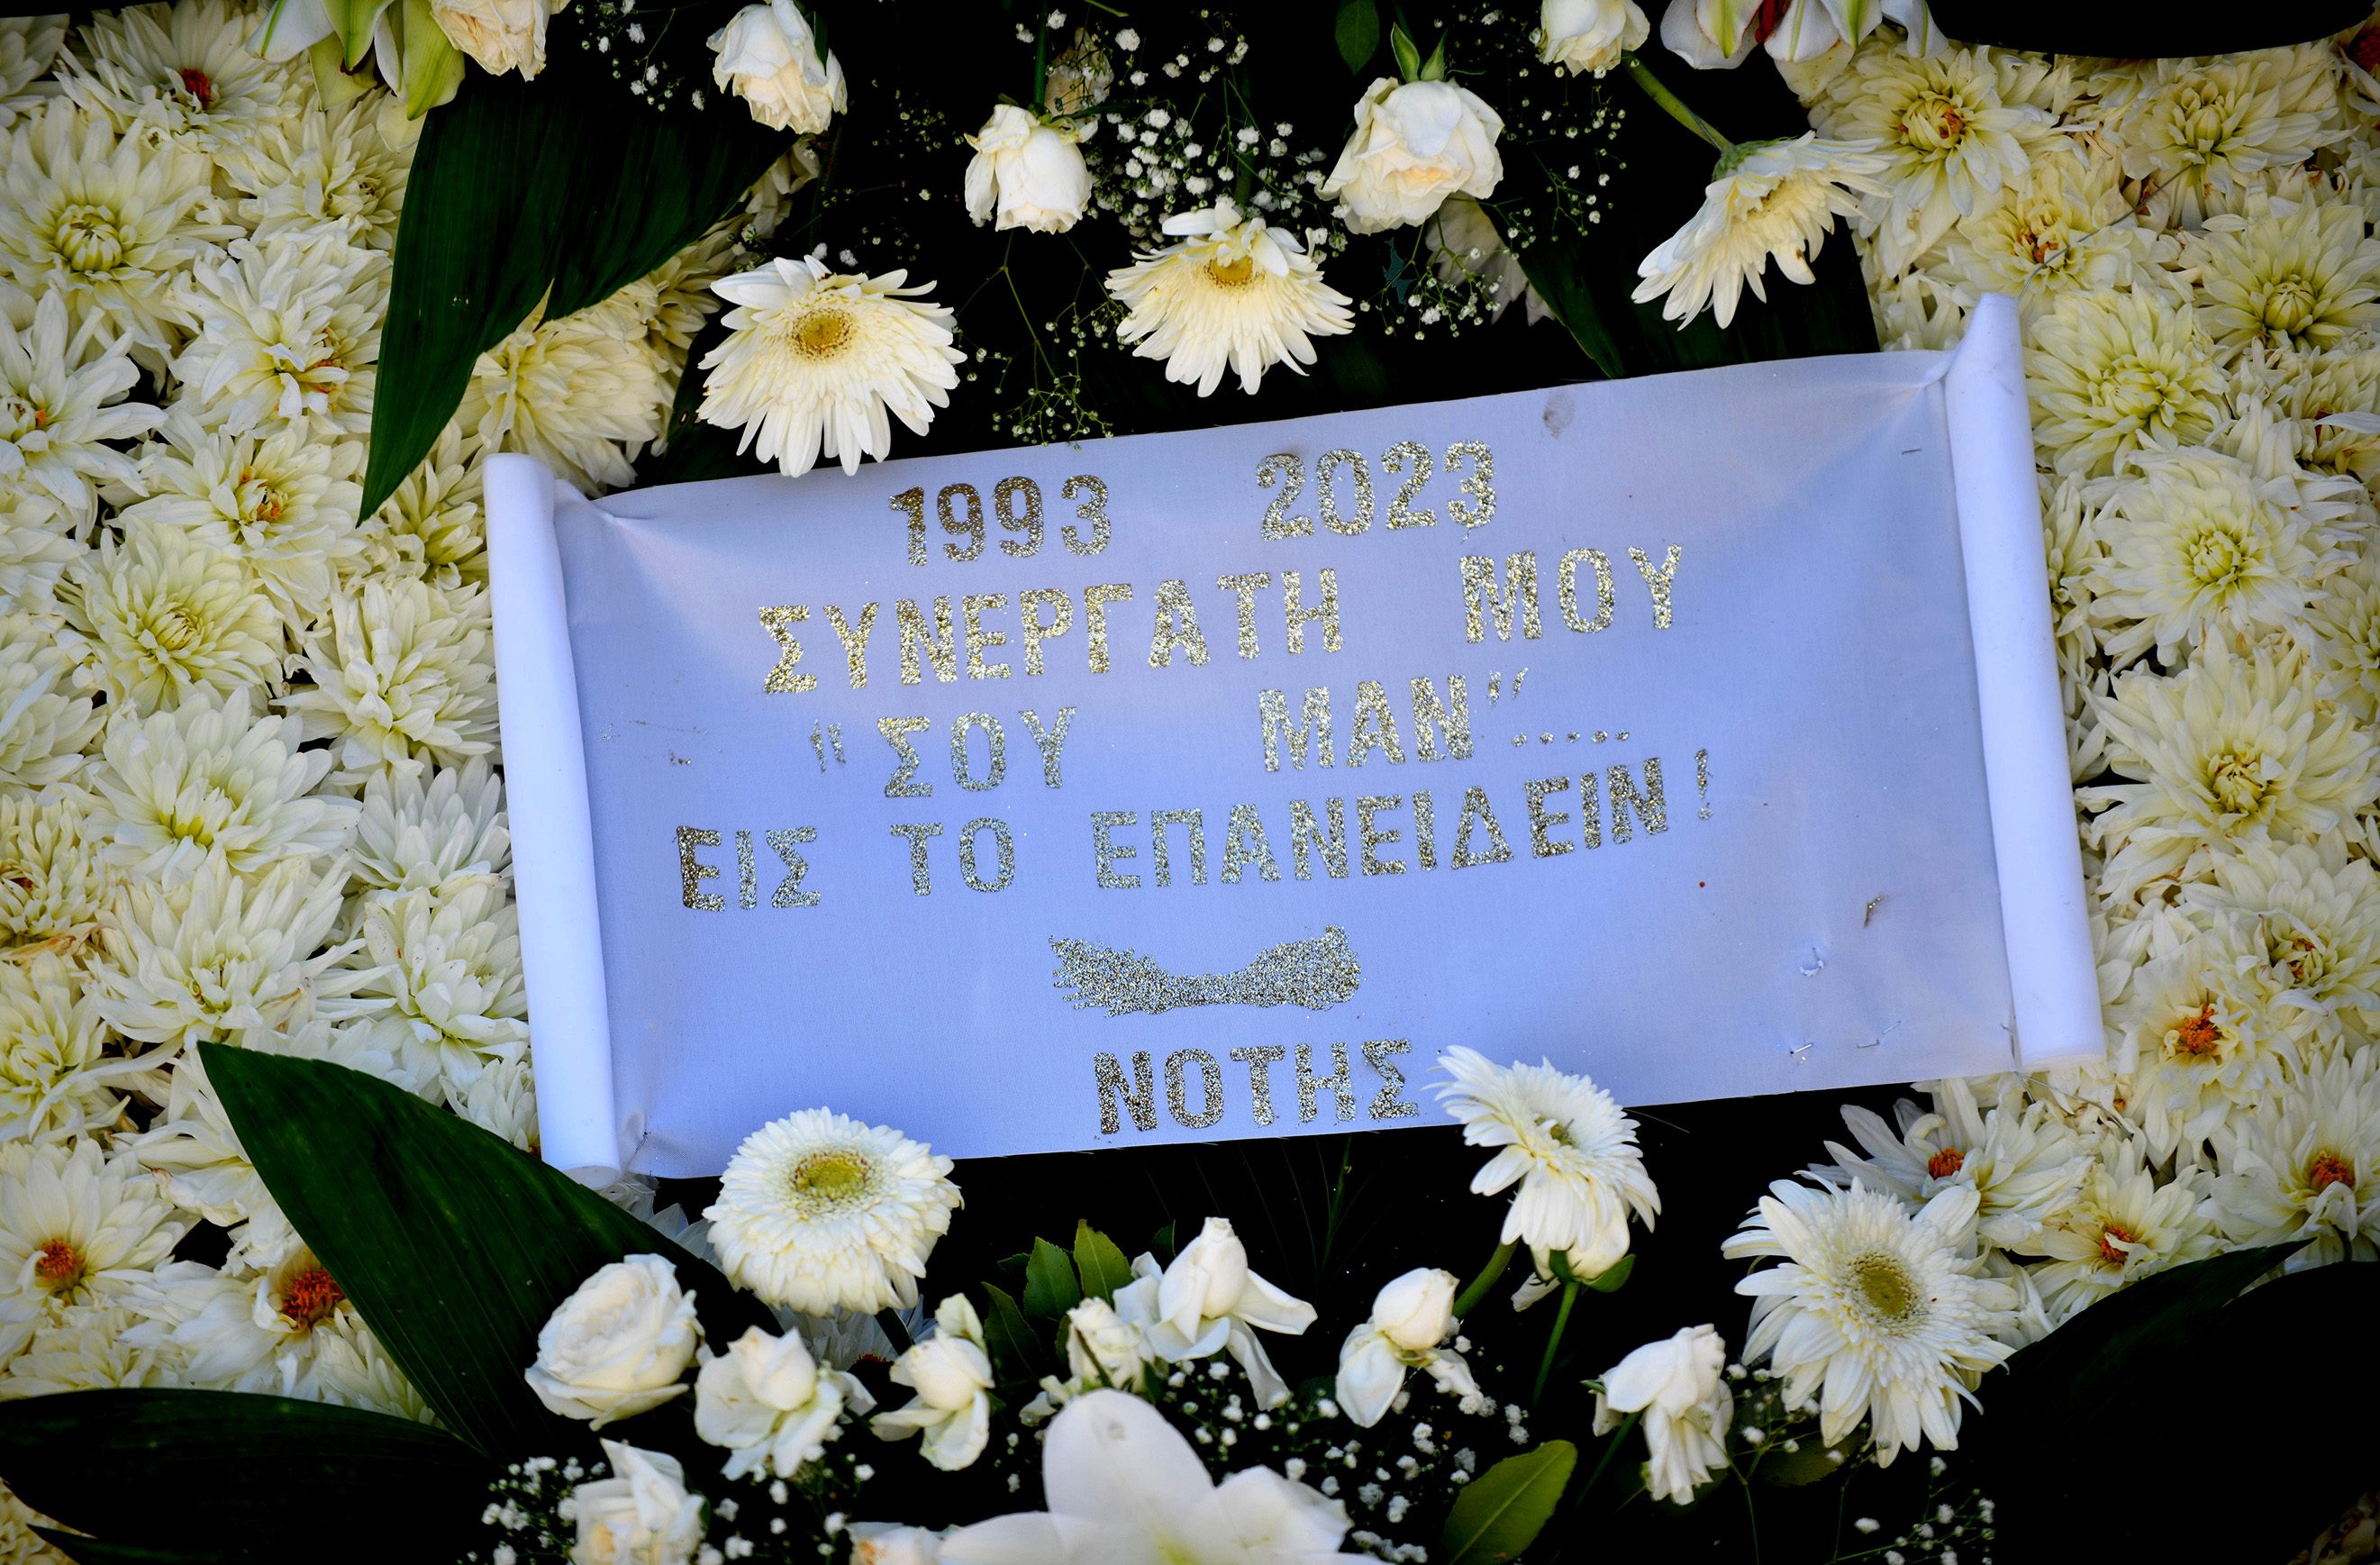 Νότης Σφακιανάκης: Δεν πήγε στην κηδεία του μαέστρου του, Μανώλη Σουβατζή – Έστειλε στεφάνι